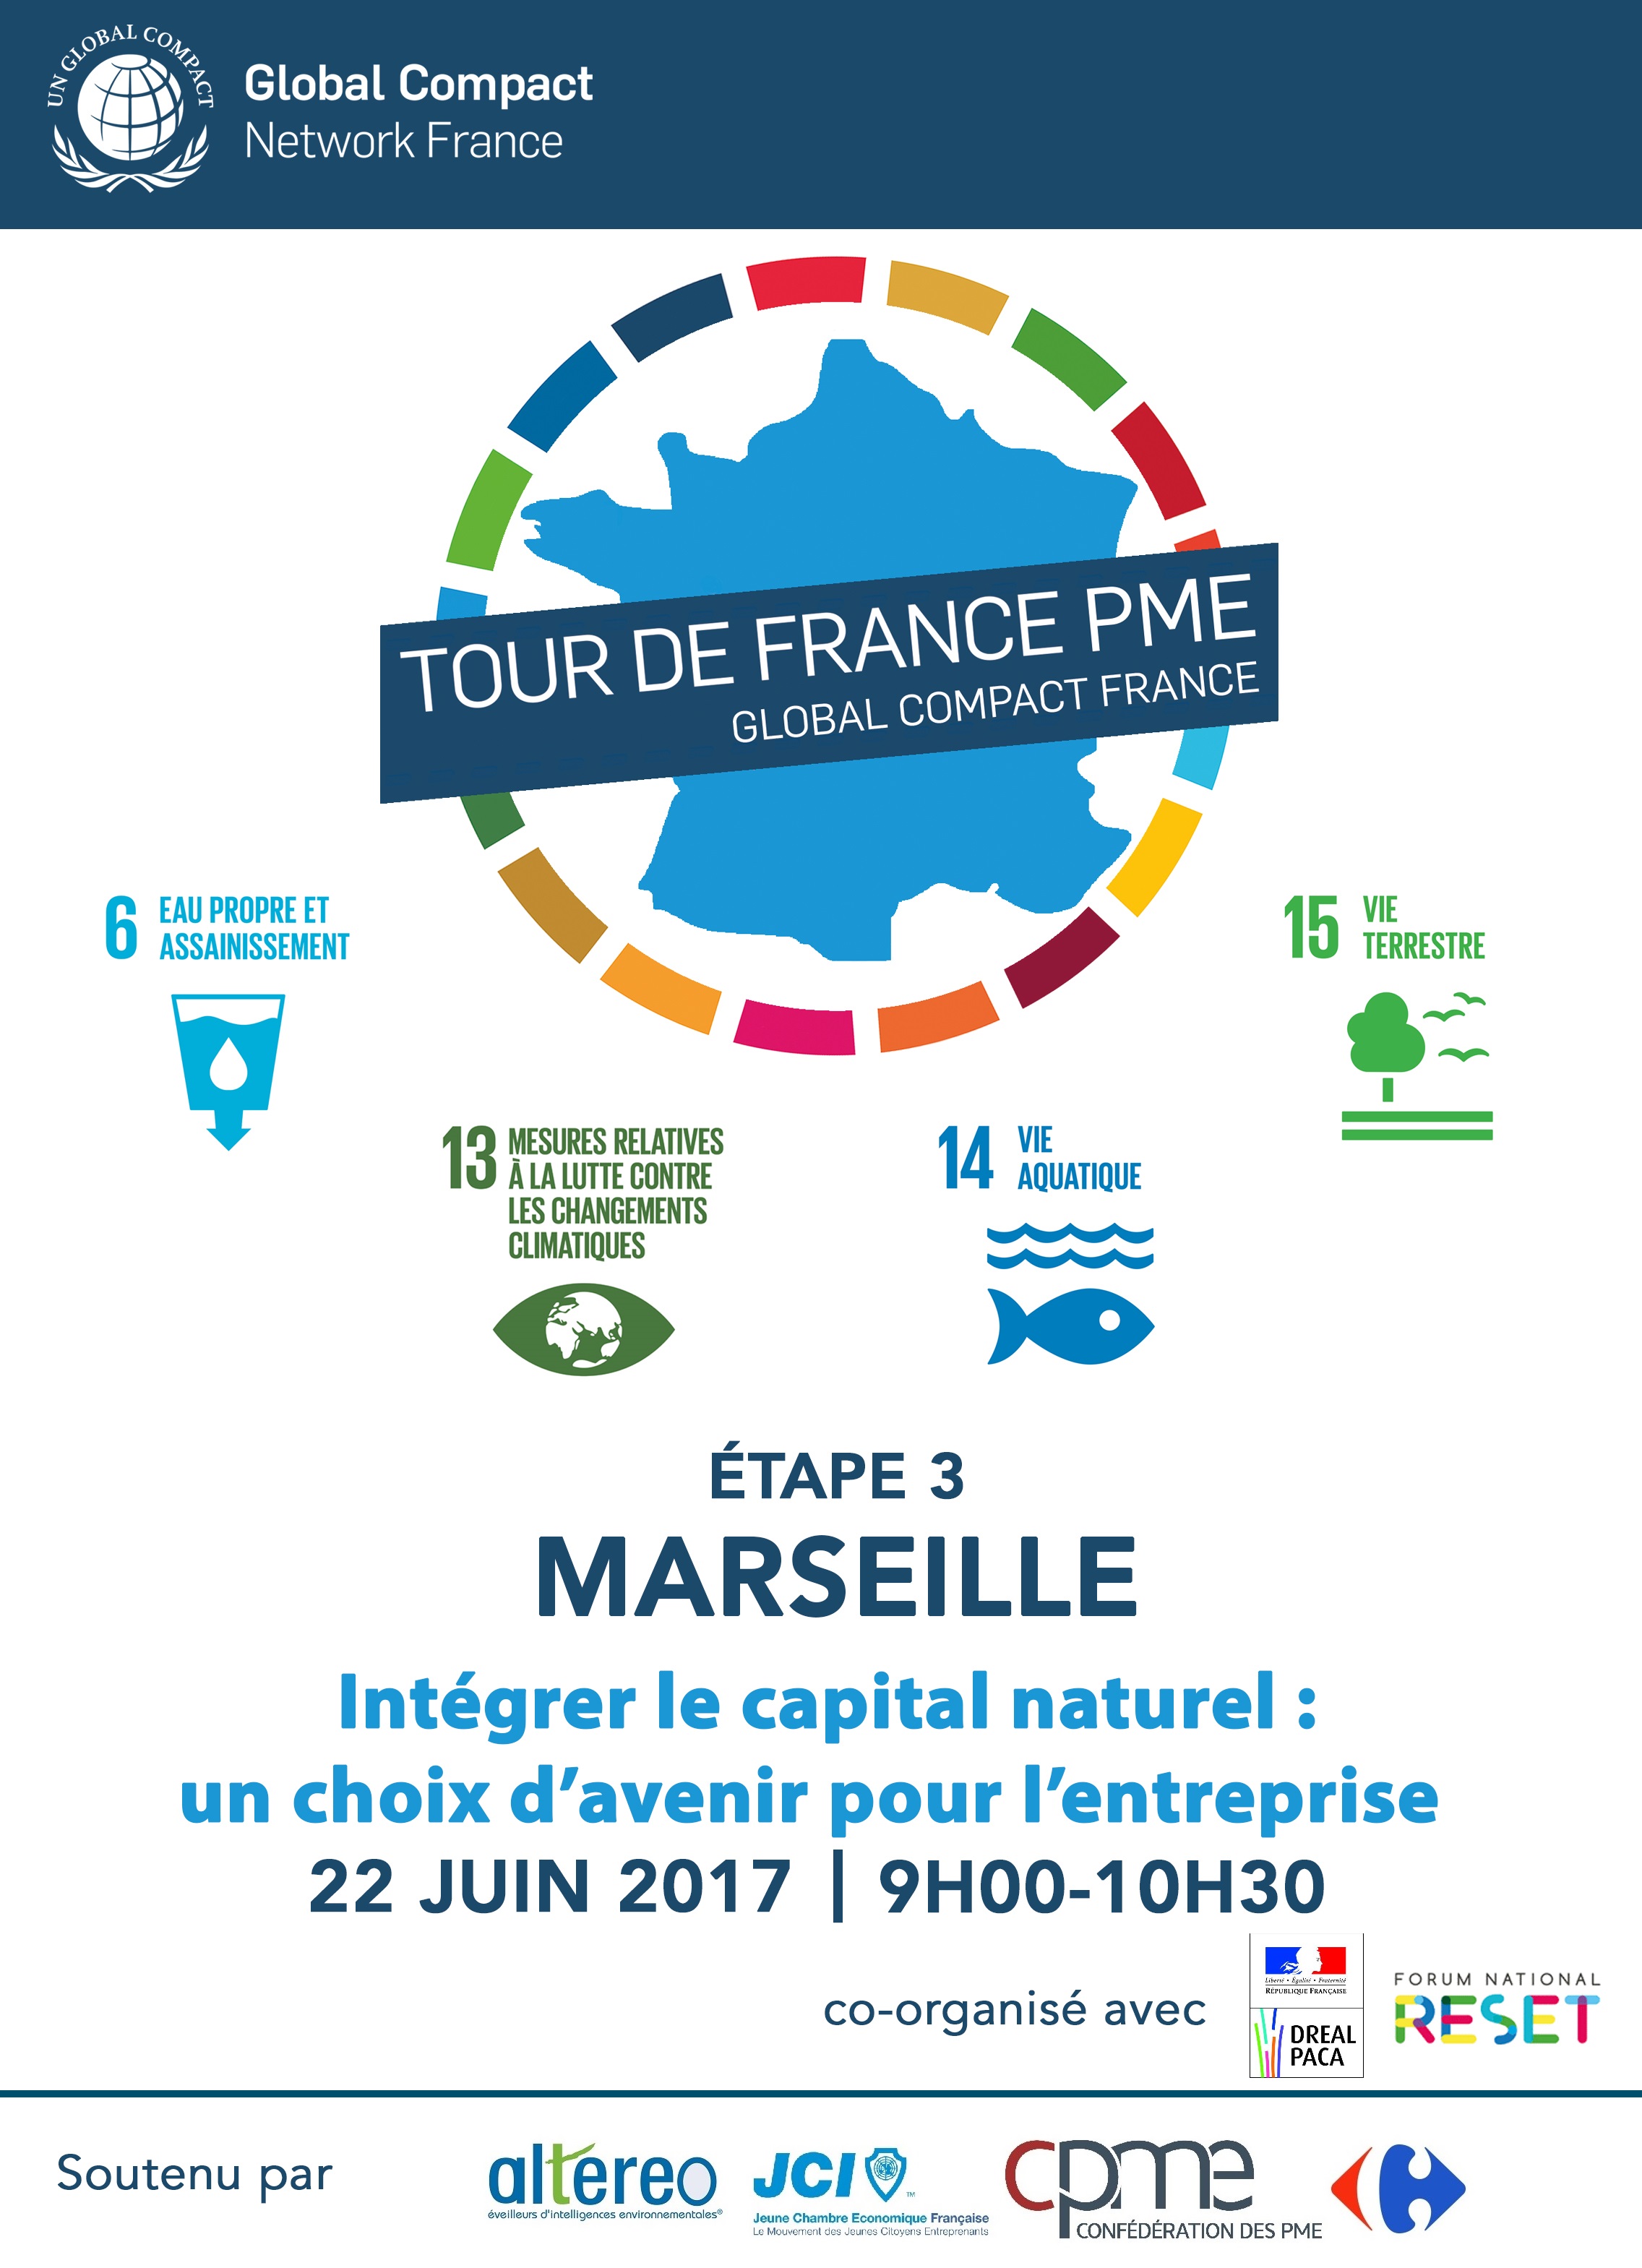 Participez au Tour de France PME du Global Compact à Marseille !